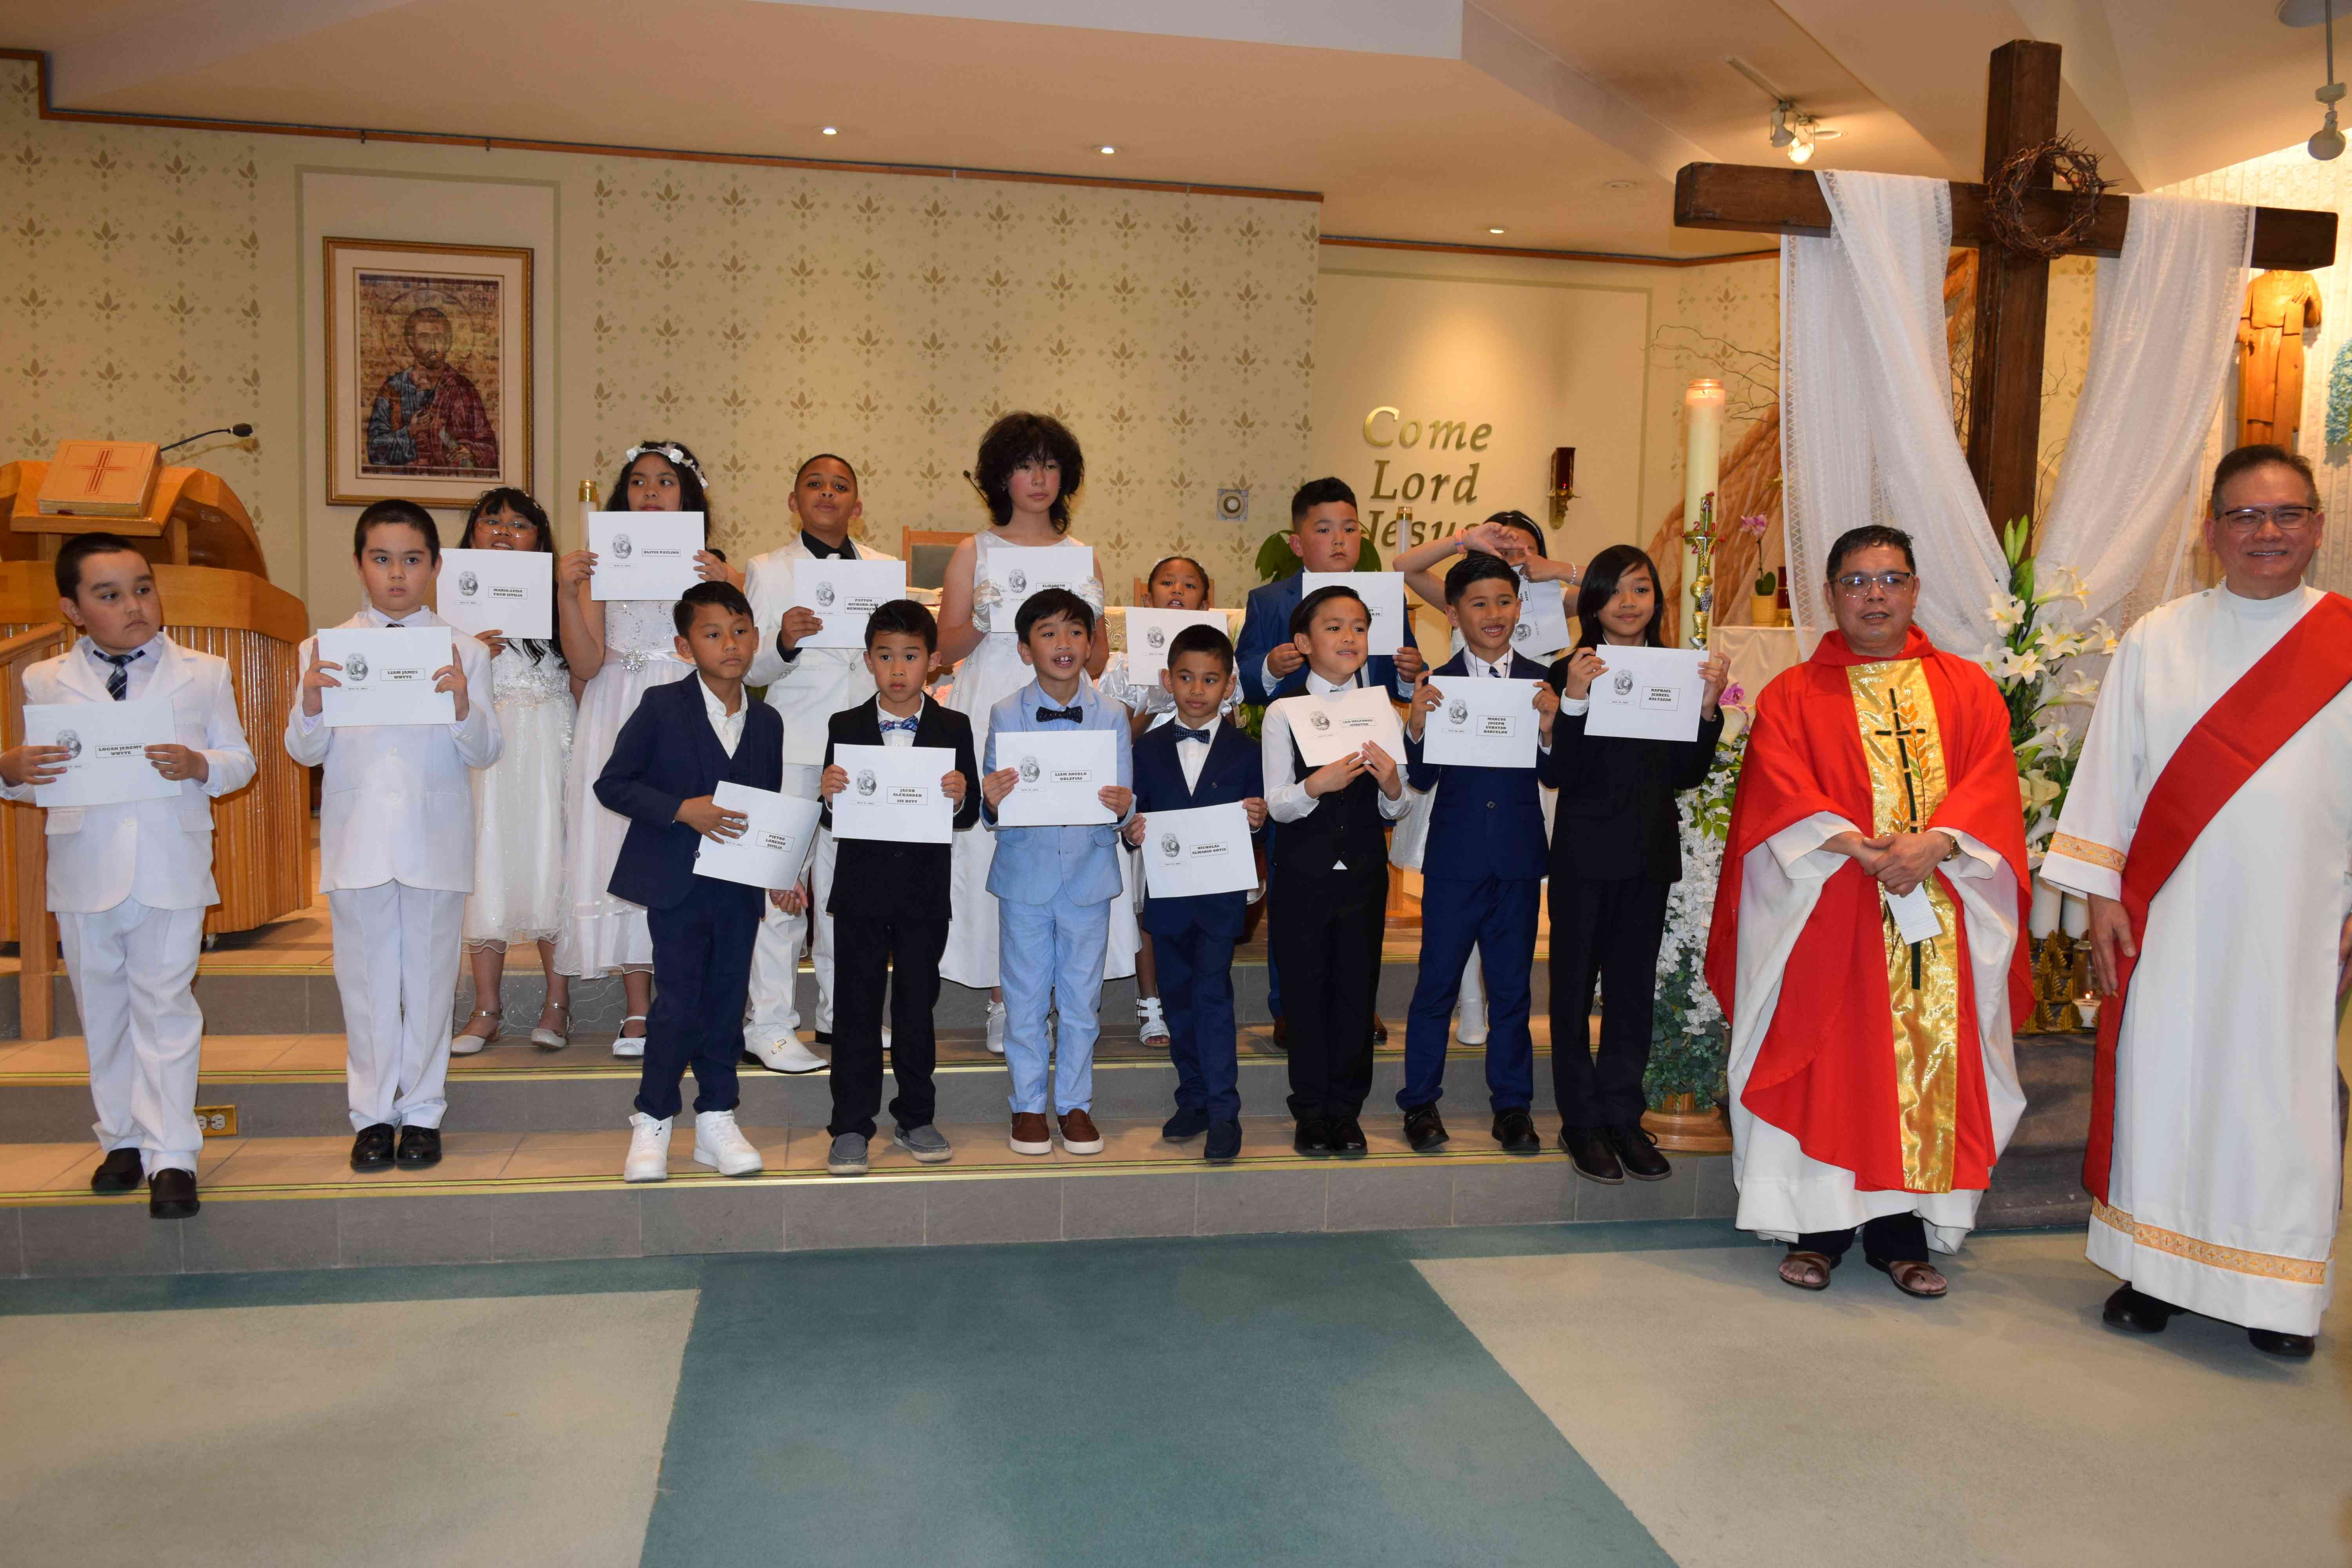 Children celebrating their First Communion